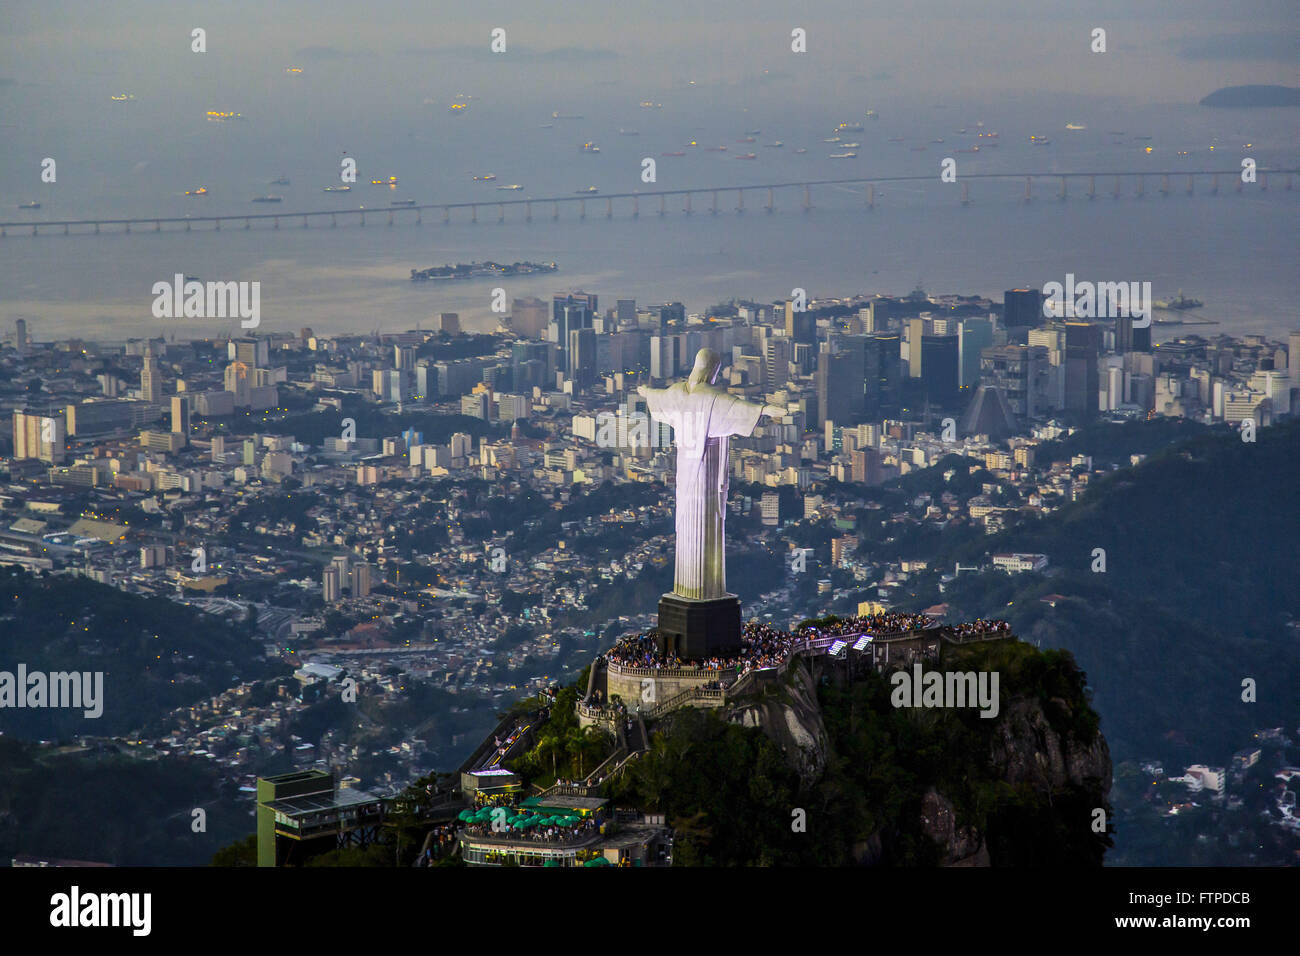 Vista aerea del Cristo redentore sul monte Corcovado al crepuscolo Foto Stock